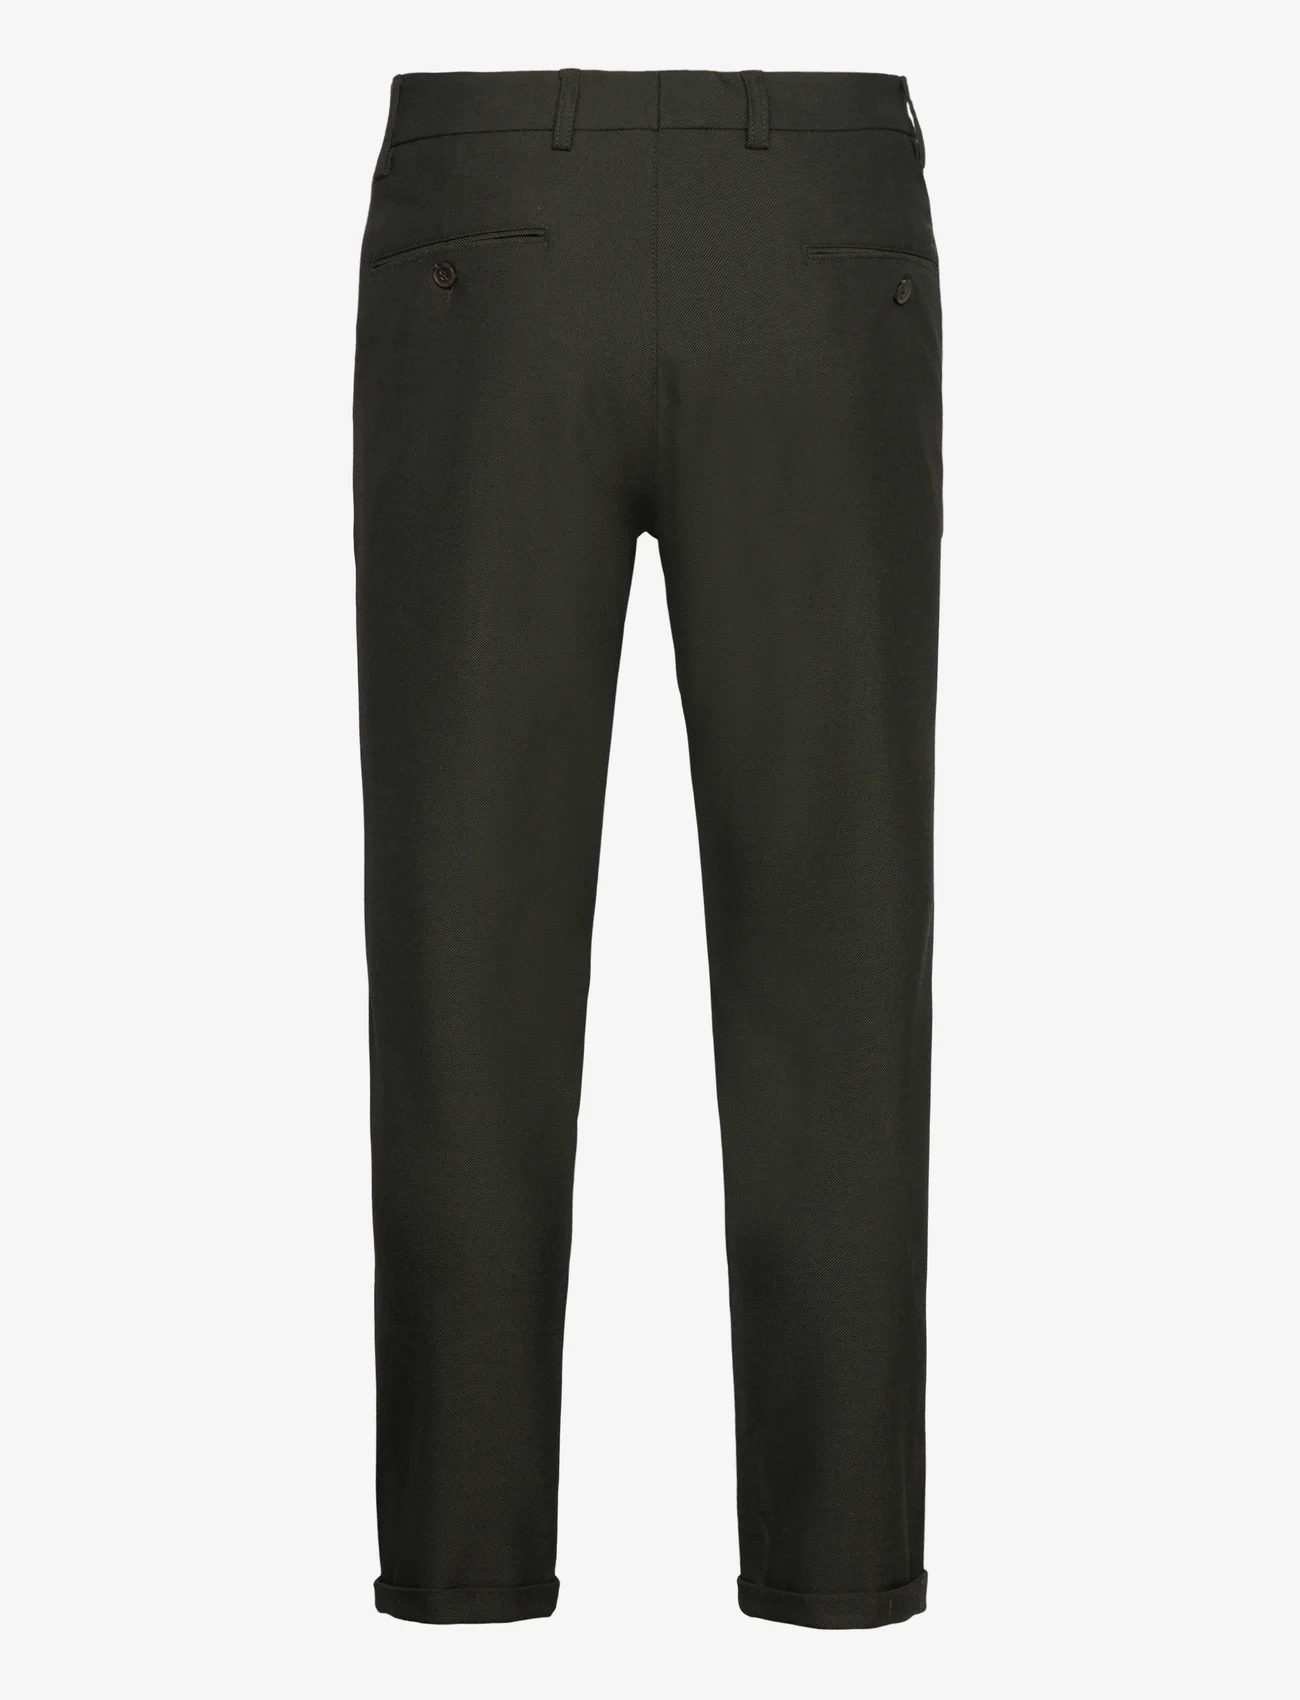 Les Deux - Como Suit Pants - Seasonal - pantalons - deep forest/charcoal - 1